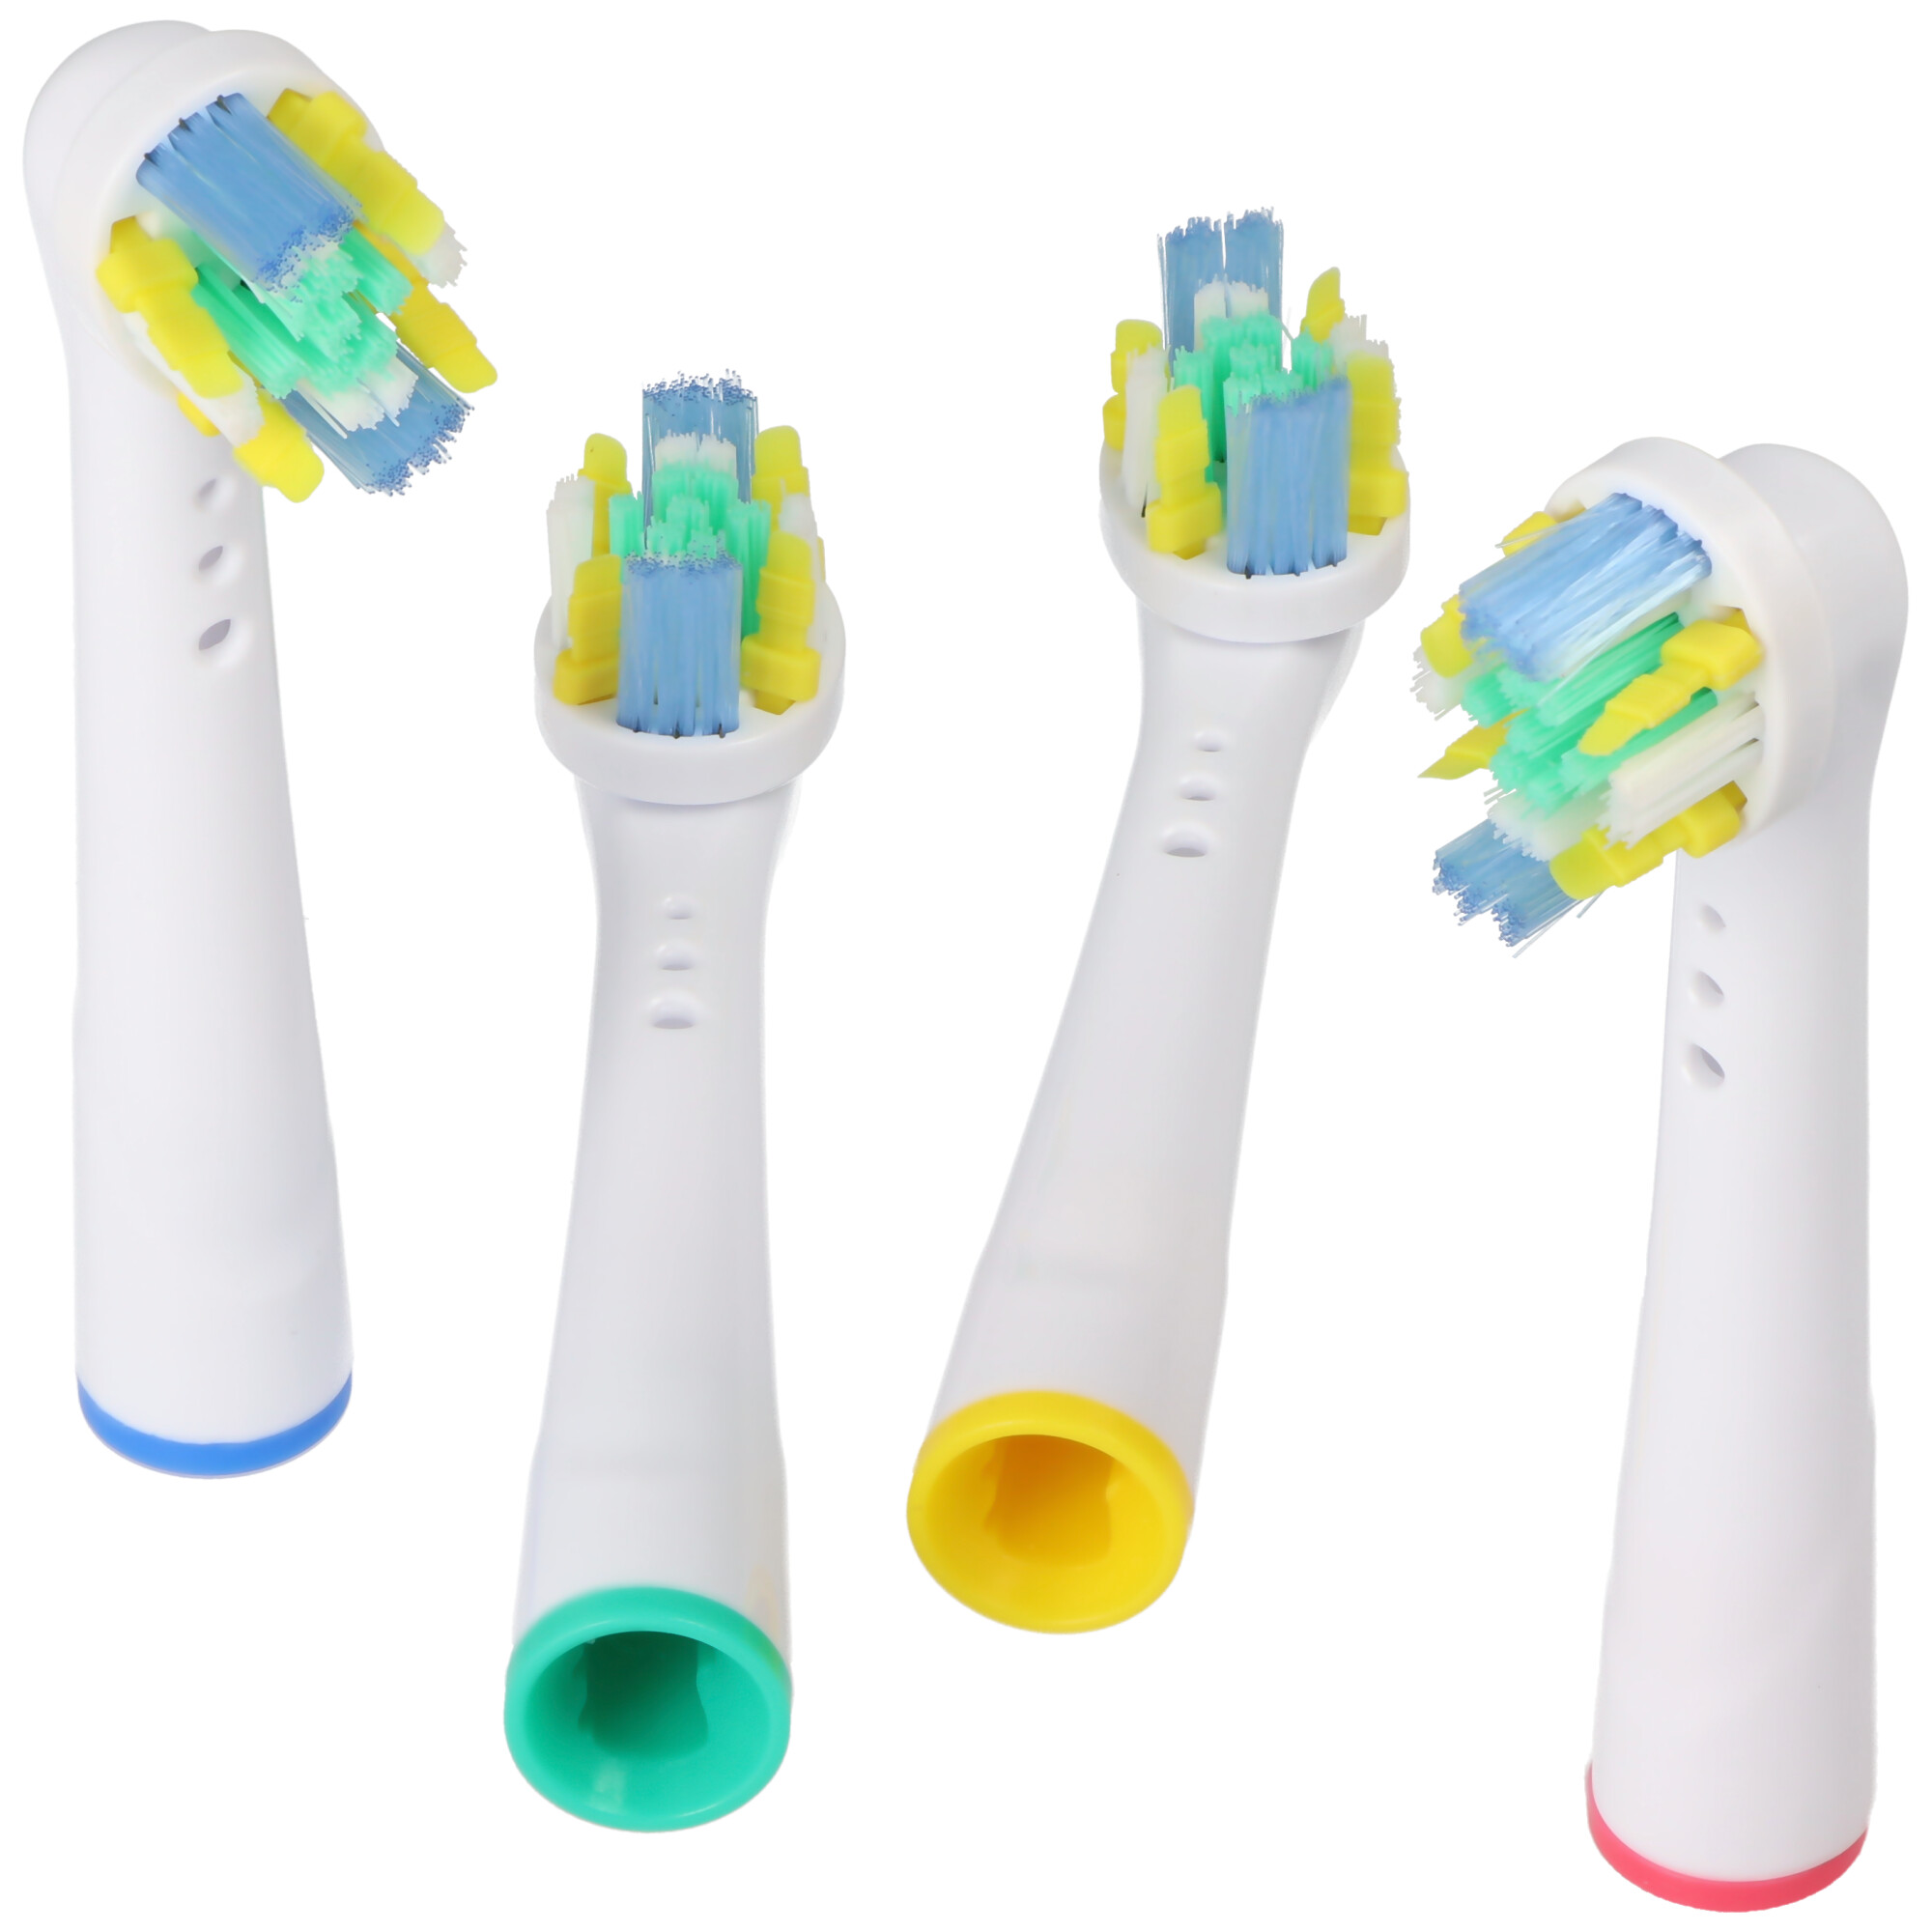 4 Stück Deep Cleaning Brush Ersatz-Zahnbürstenkopf für elektrische Zahnbürsten von Oral-B, passend z.B. für Oral-B D10, D12, D16, D12 und viele andere Modelle von Oral-B